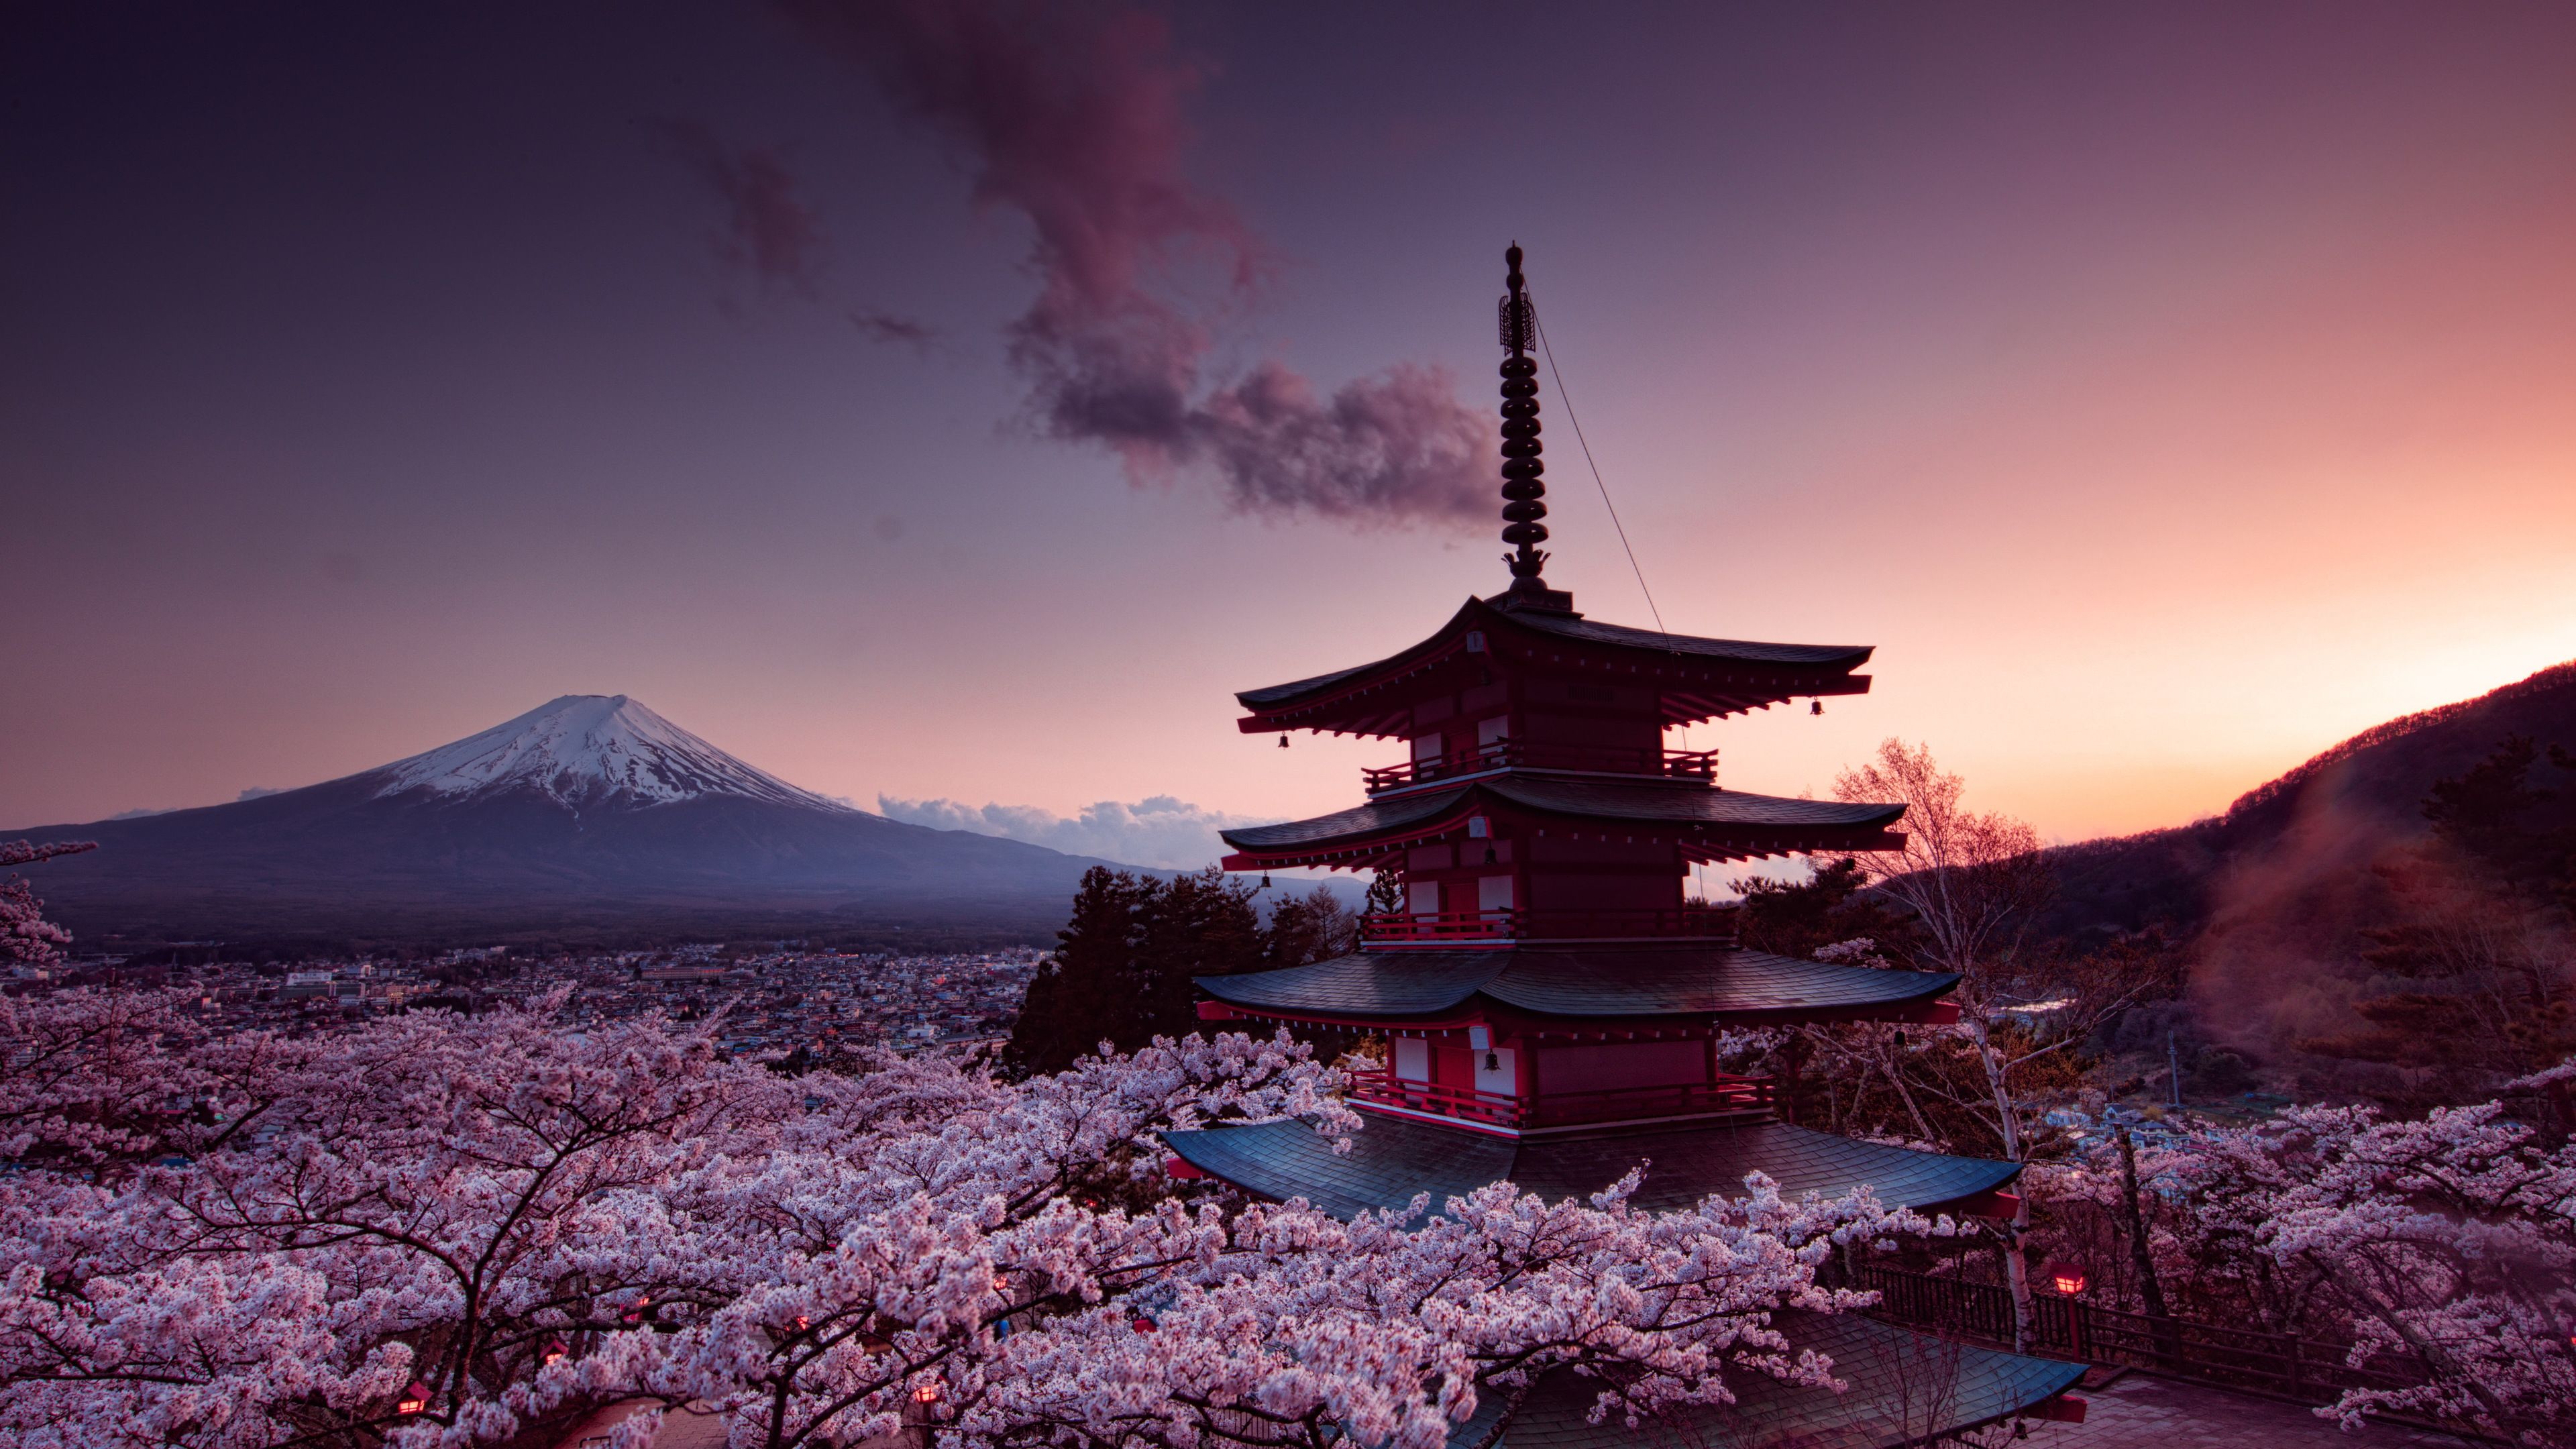 Phong cảnh Nhật Bản là một sự pha trộn của sự thanh bình và tươi đẹp. Hình ảnh liên quan đến phong cảnh Nhật Bản sẽ khiến bạn cảm thấy yên bình trong tâm hồn và muốn khám phá thêm về những vùng đất tuyệt đẹp này.